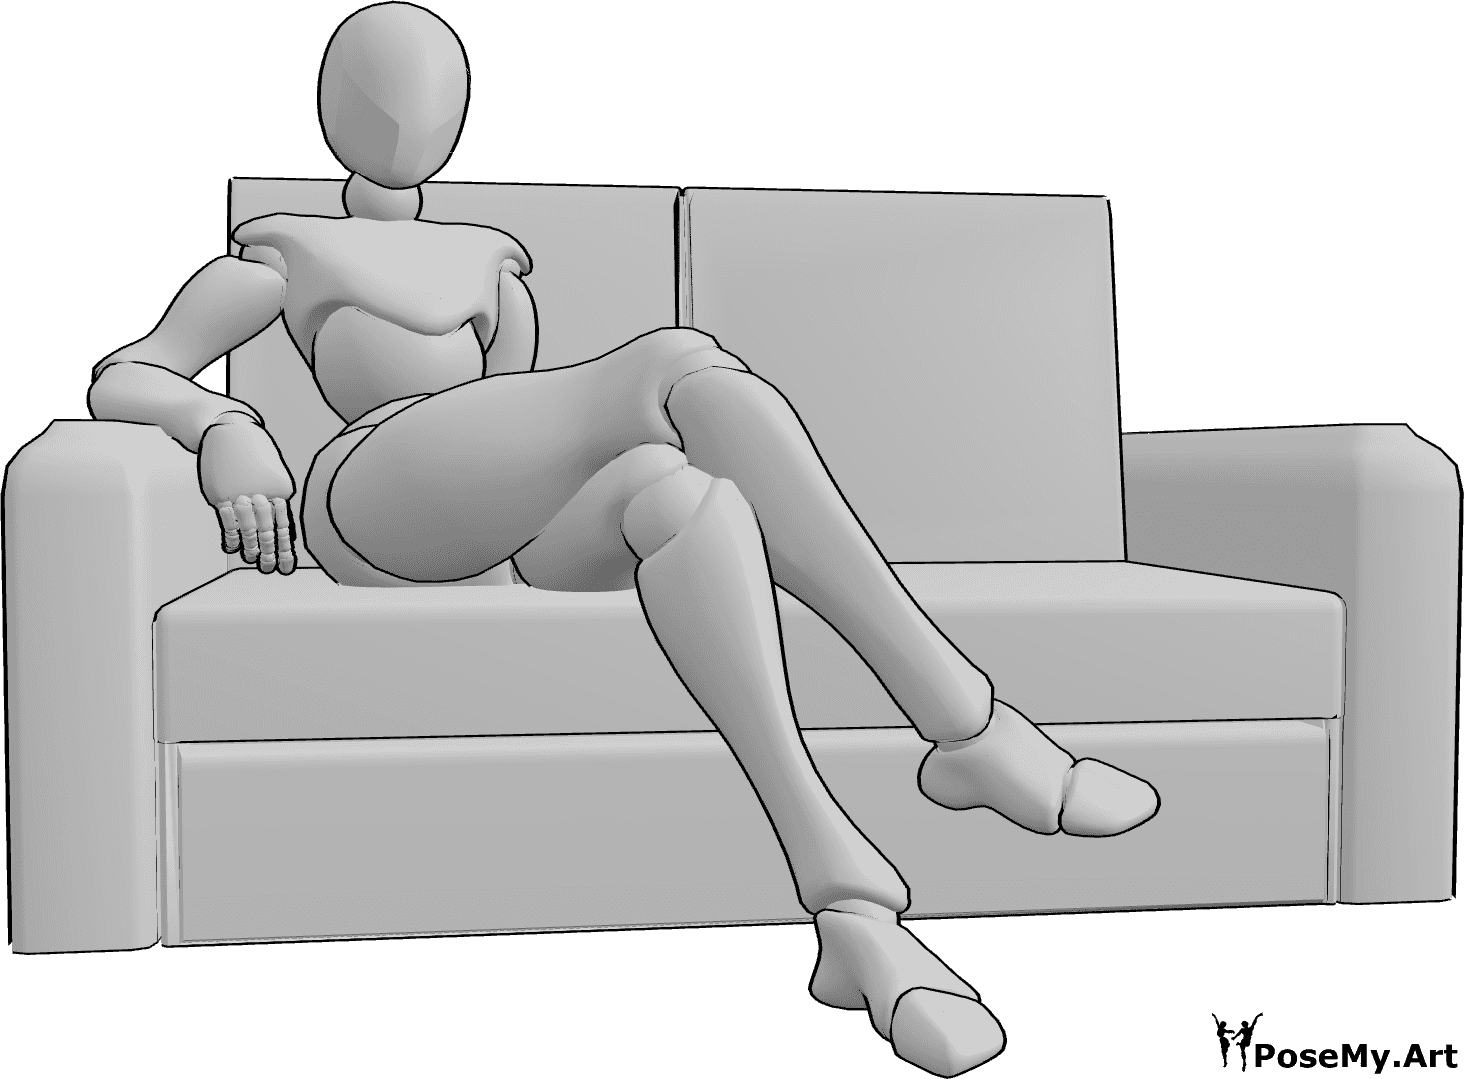 Referência de poses- Pose confortável no sofá - A mulher está sentada confortavelmente no sofá com as pernas cruzadas